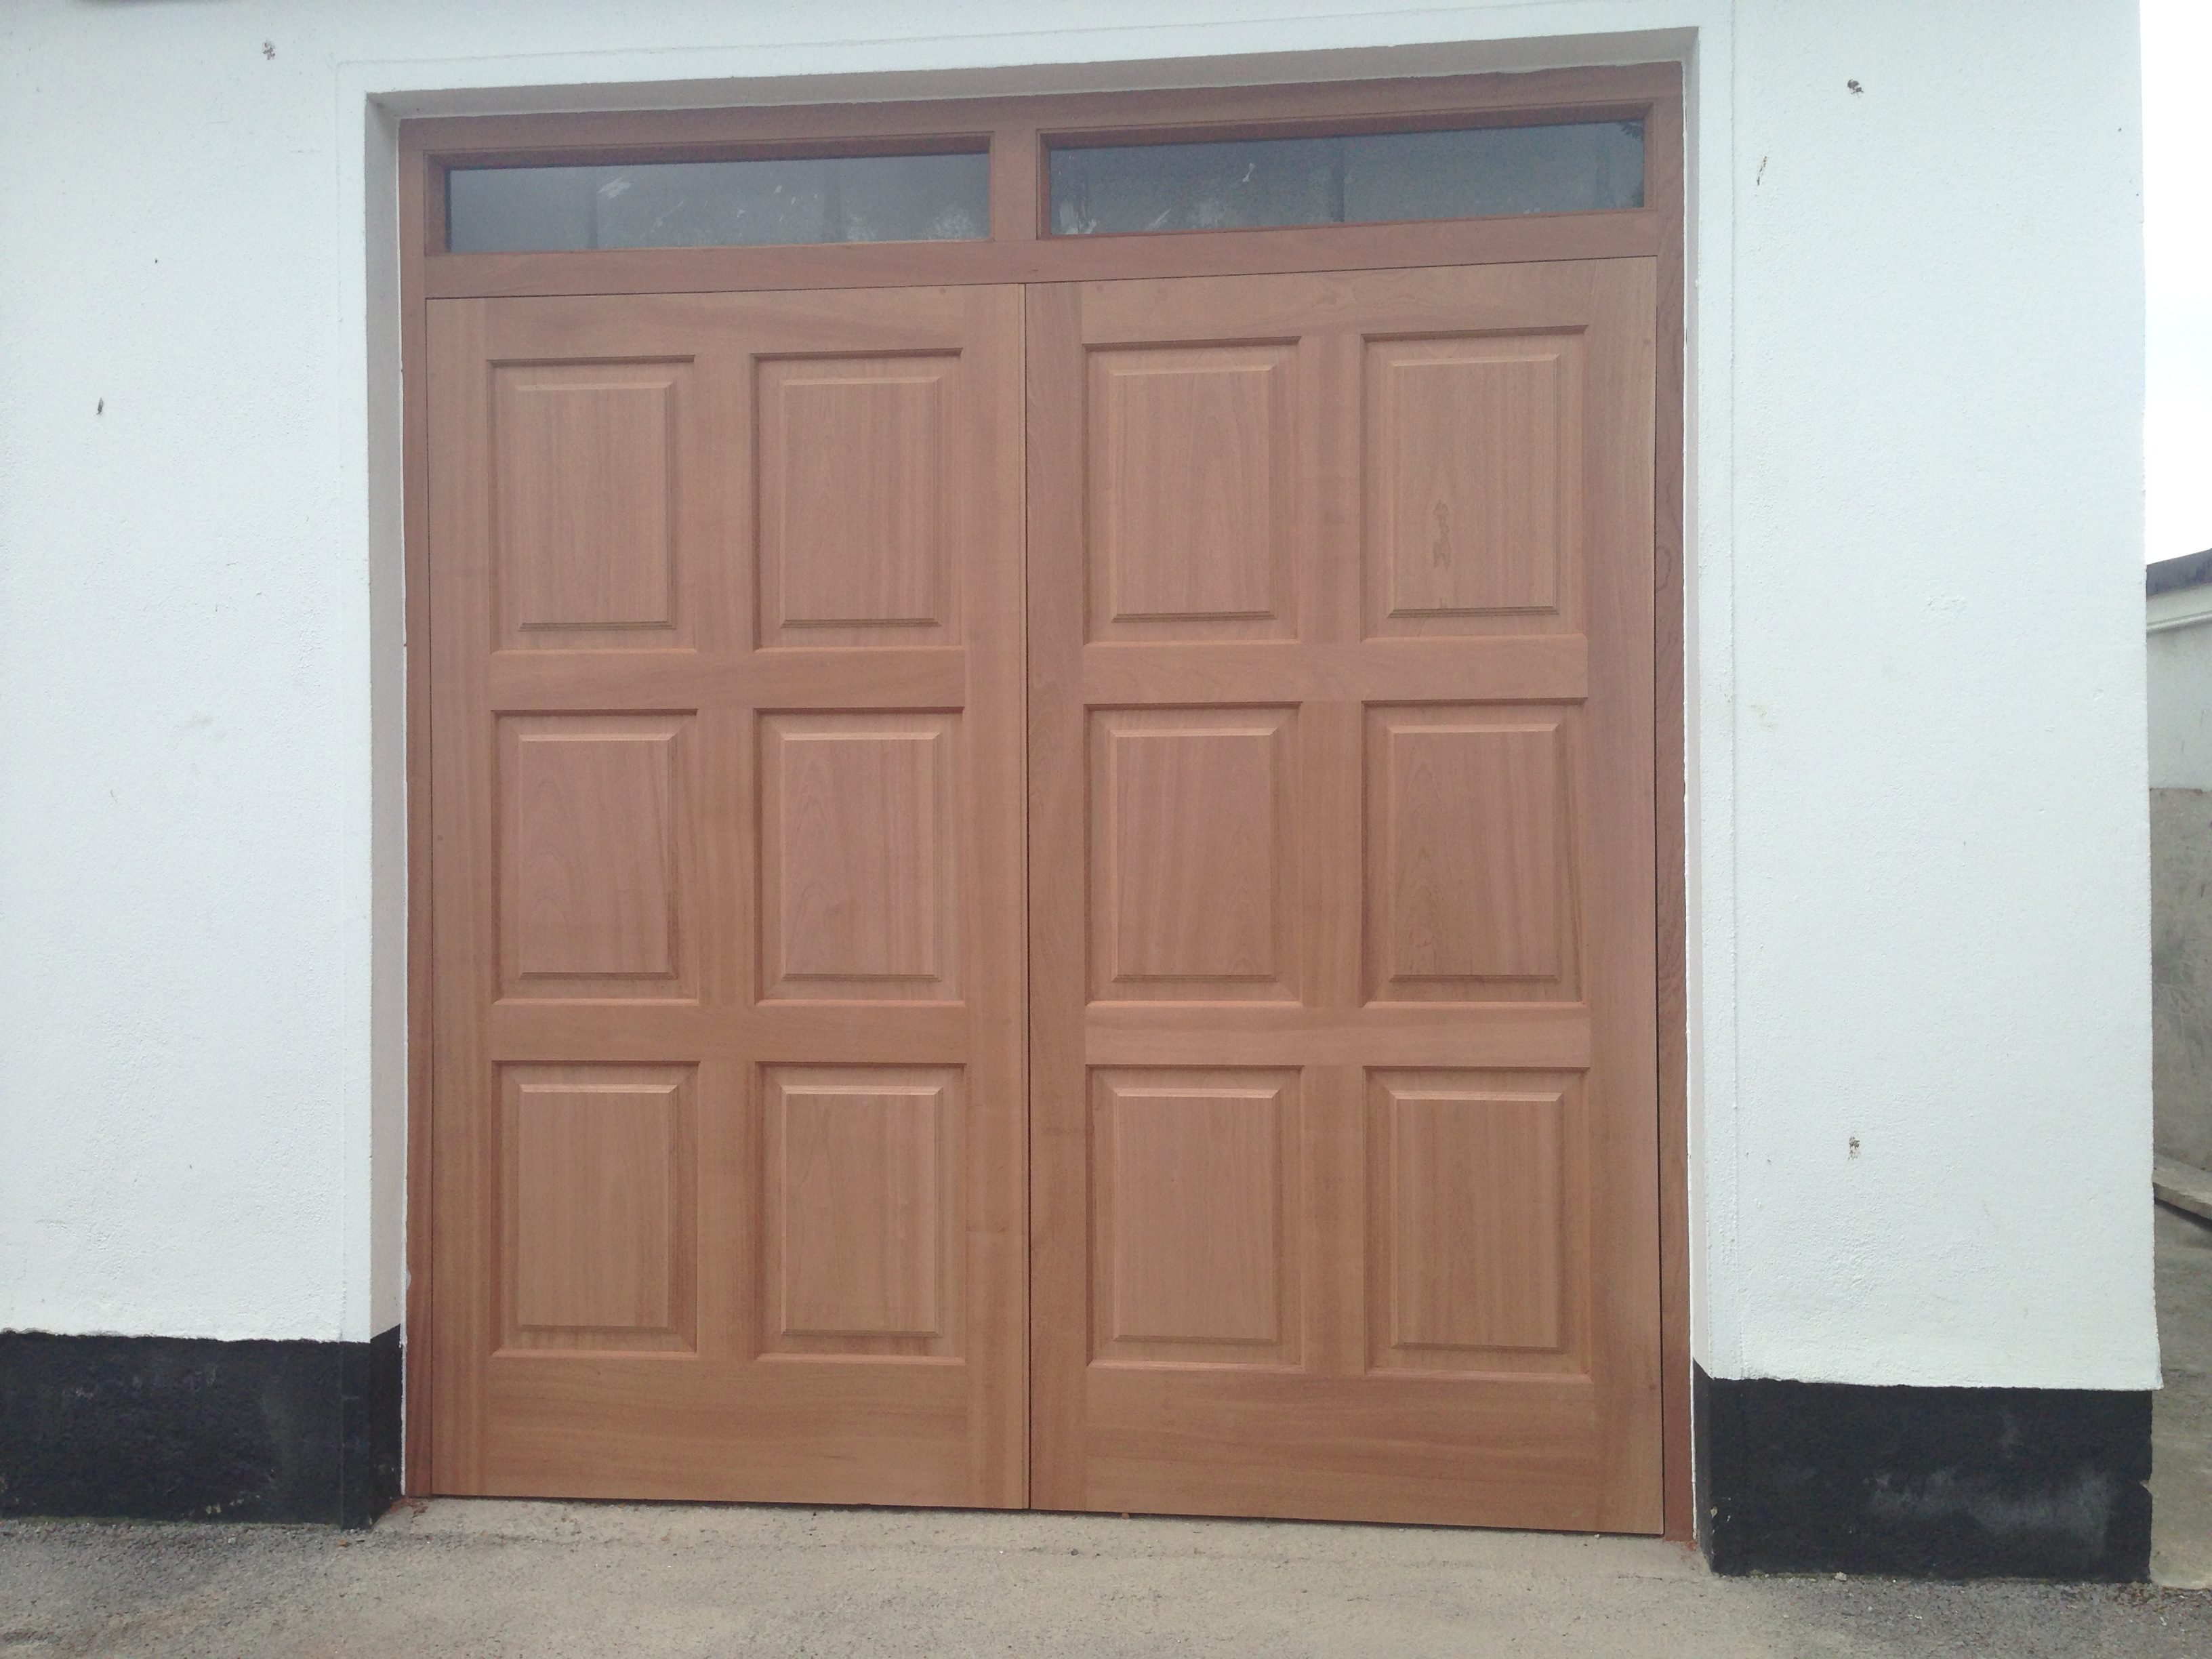 6 Panel Garage Doors